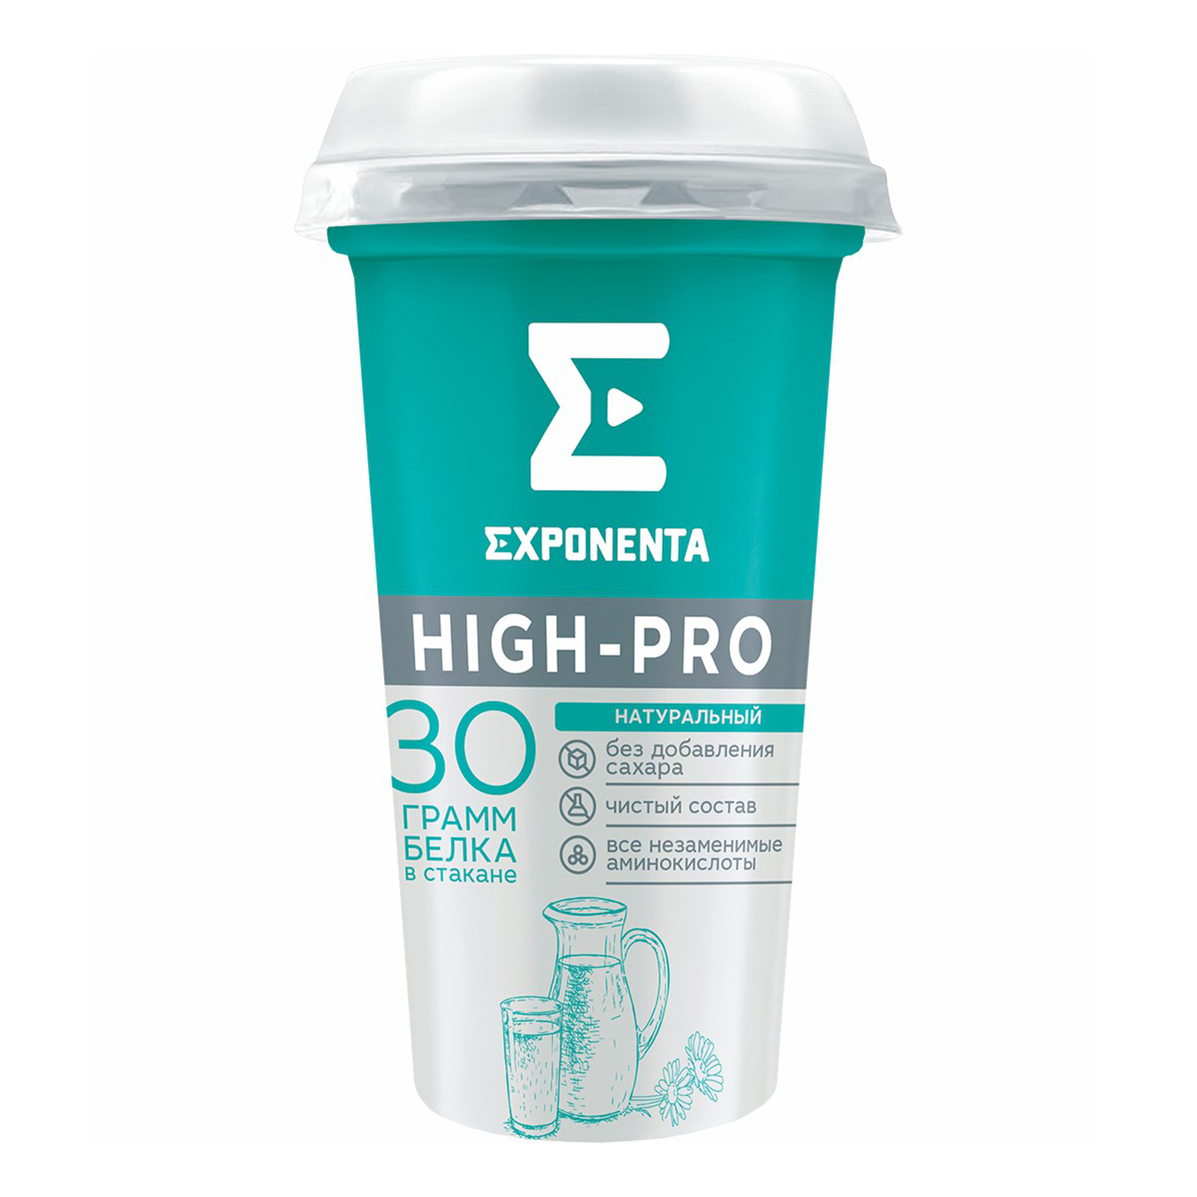 Кисломолочный напиток Exponenta High-Pro обезжиренный 250 мл